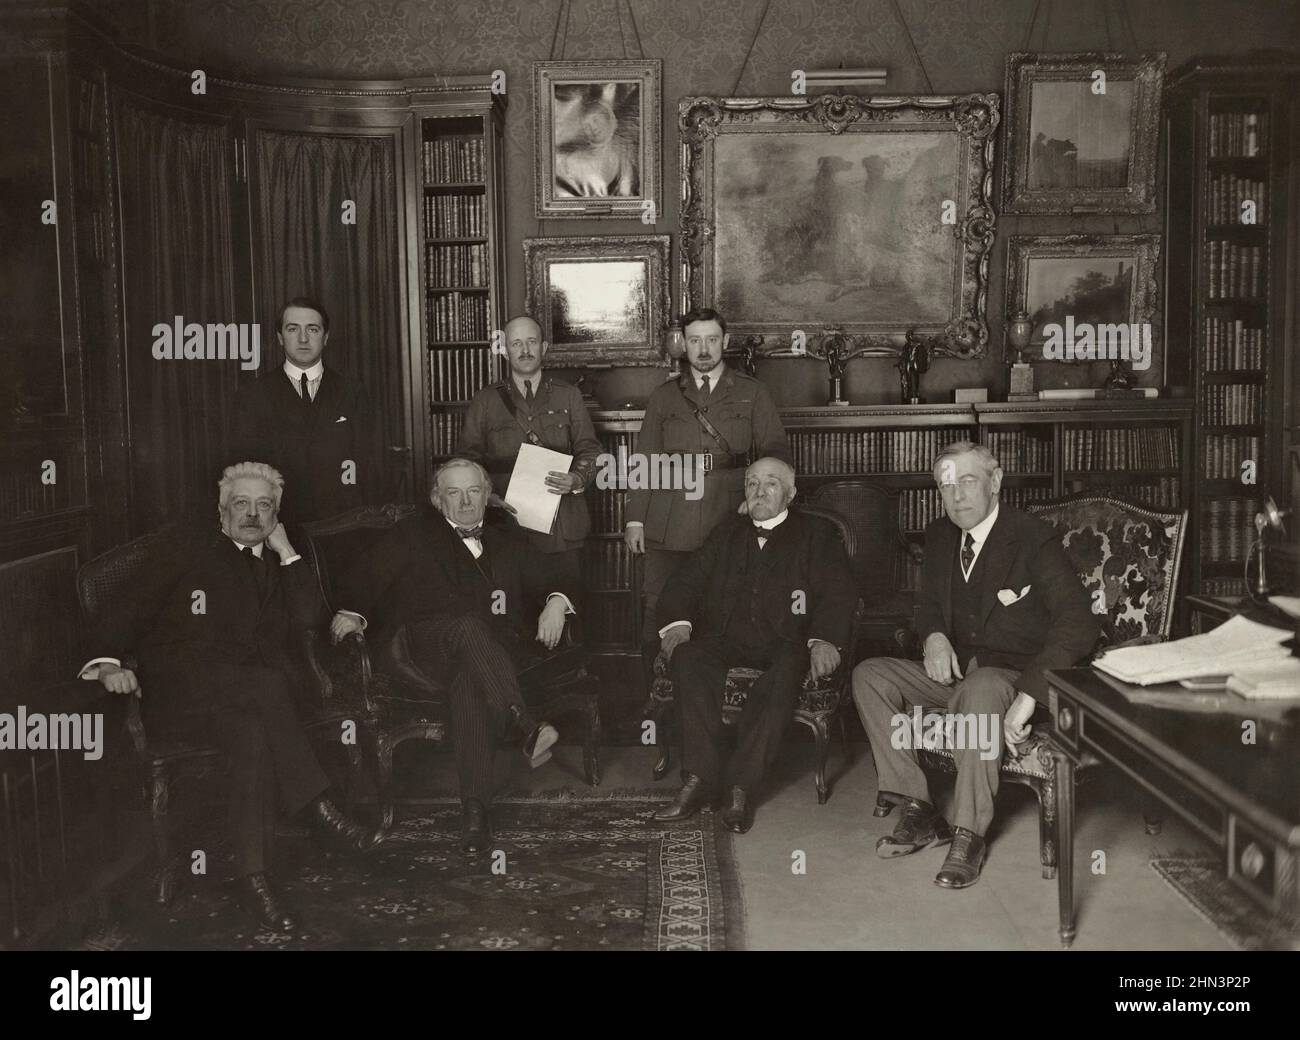 Reunión de los líderes de Triple Entente (de izquierda a derecha): Premier Orlando de Italia, Premier Lloyd George de Inglaterra, Premier Clemenceau de Francia y Presidente Foto de stock